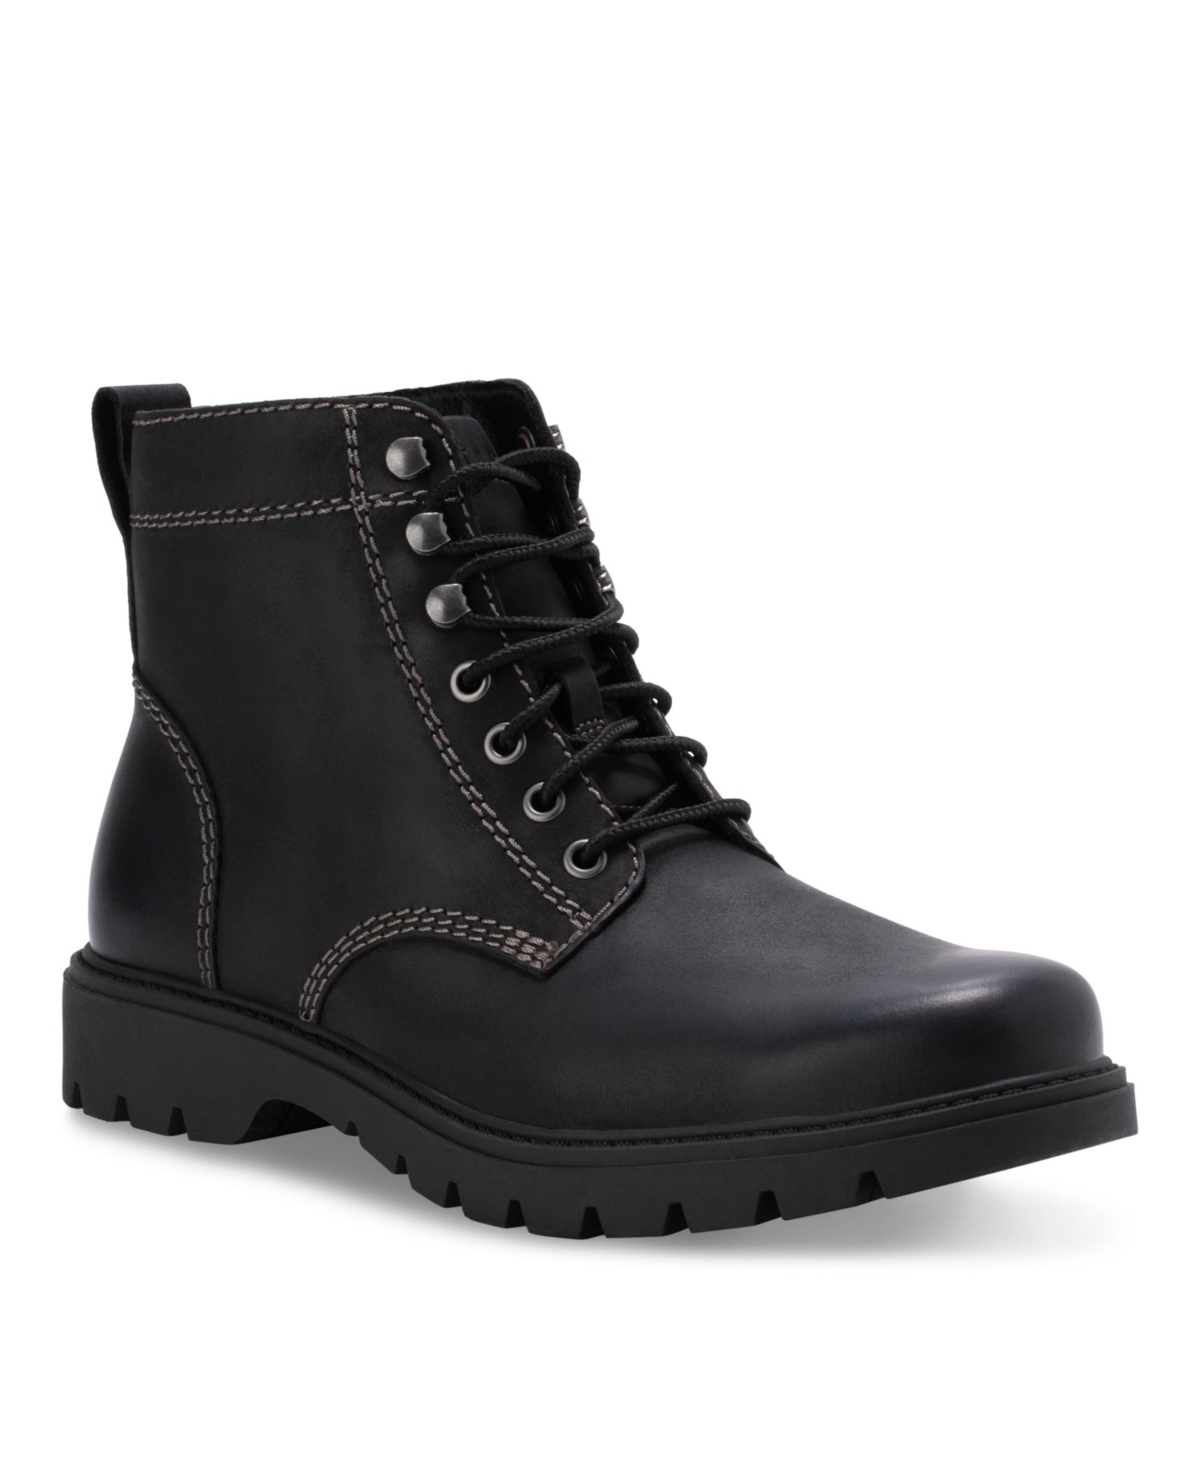 Men's Baxter Lace Up Boots - Black